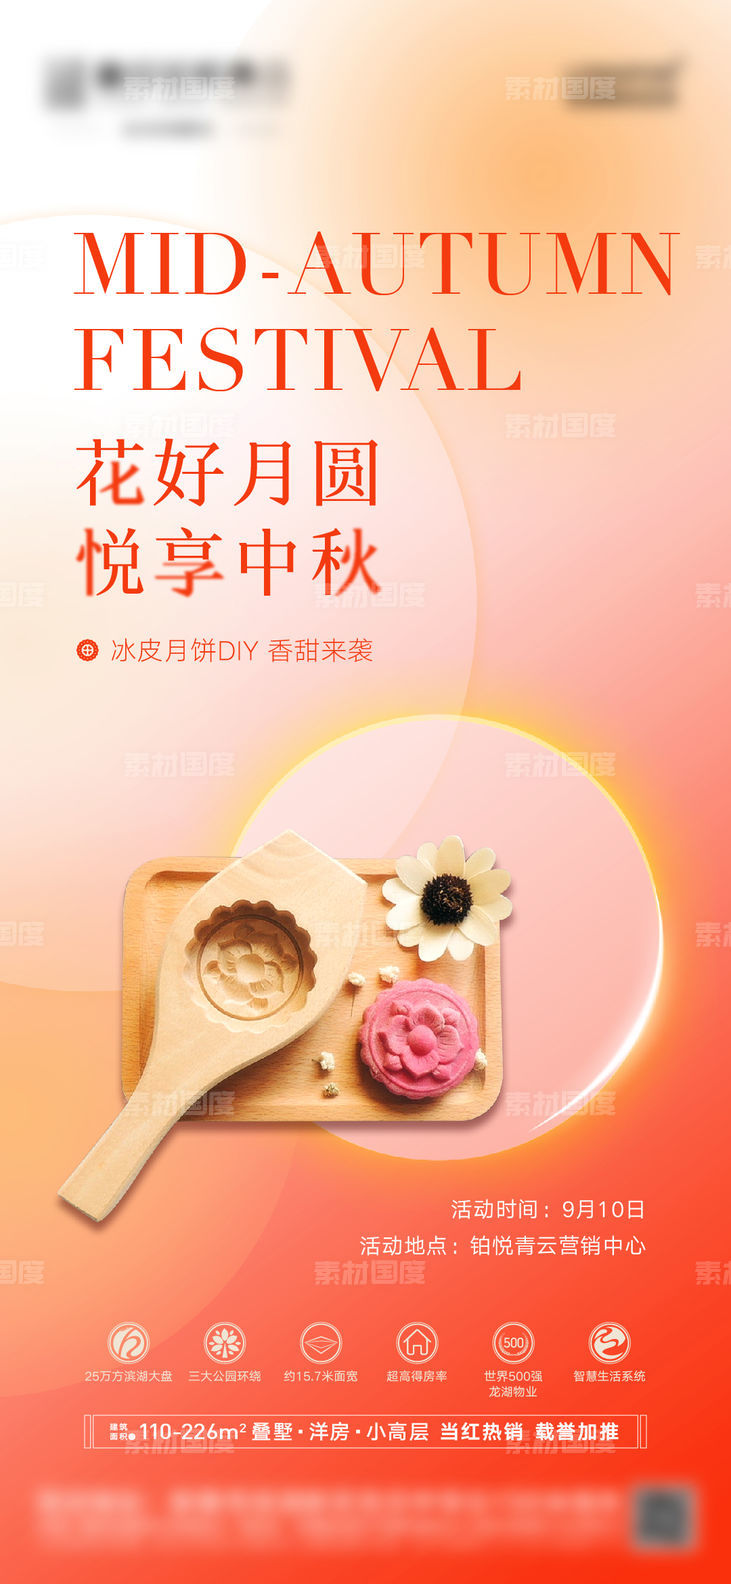 中秋节月饼DIY暖场活动海报